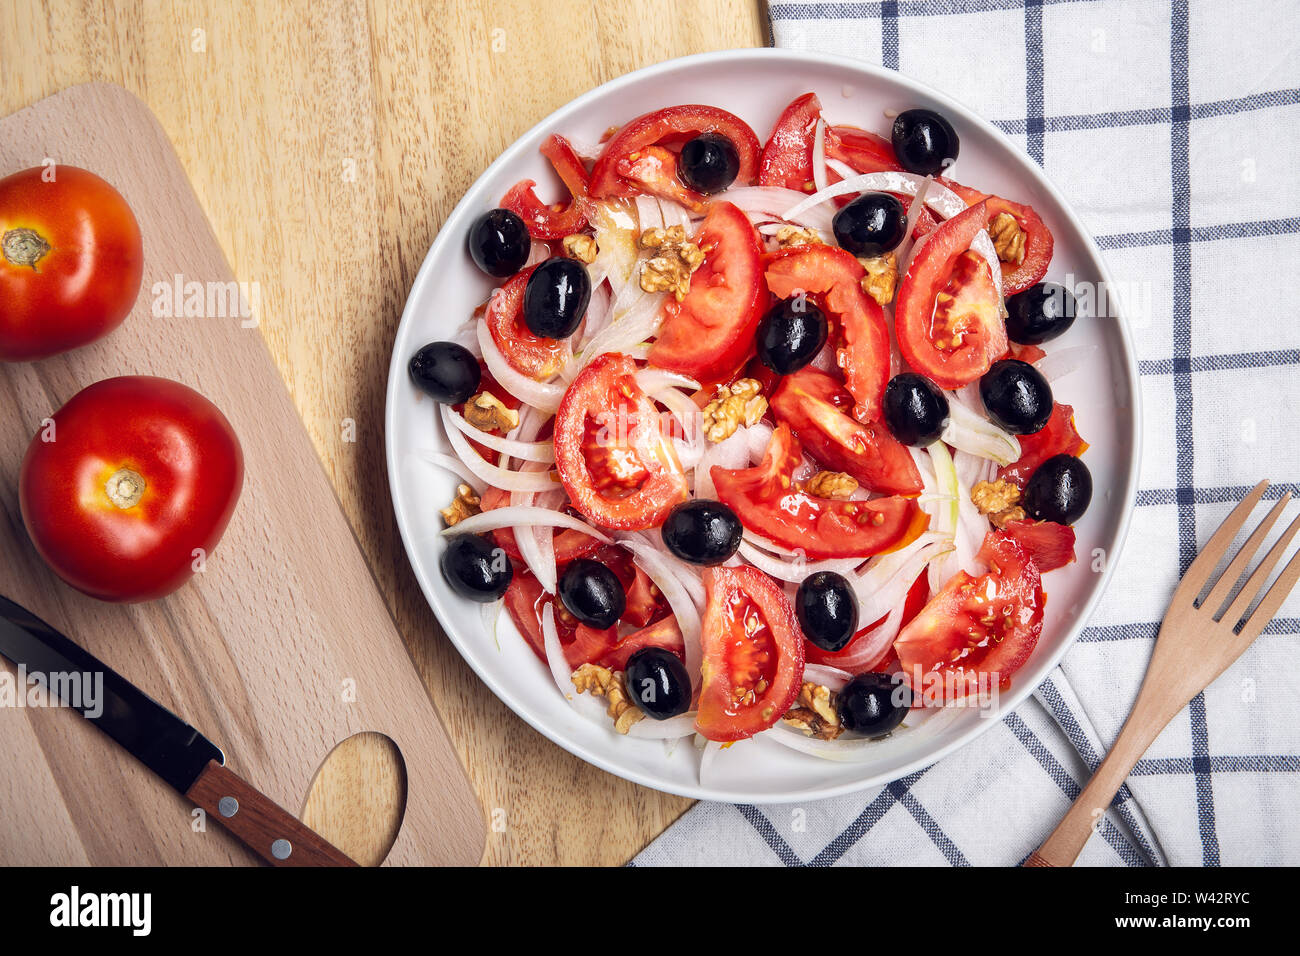 Gustosa insalata di pomodoro con cipolla e olive nere sulla piastra. Cucina mediterranea. Vista superiore Foto Stock